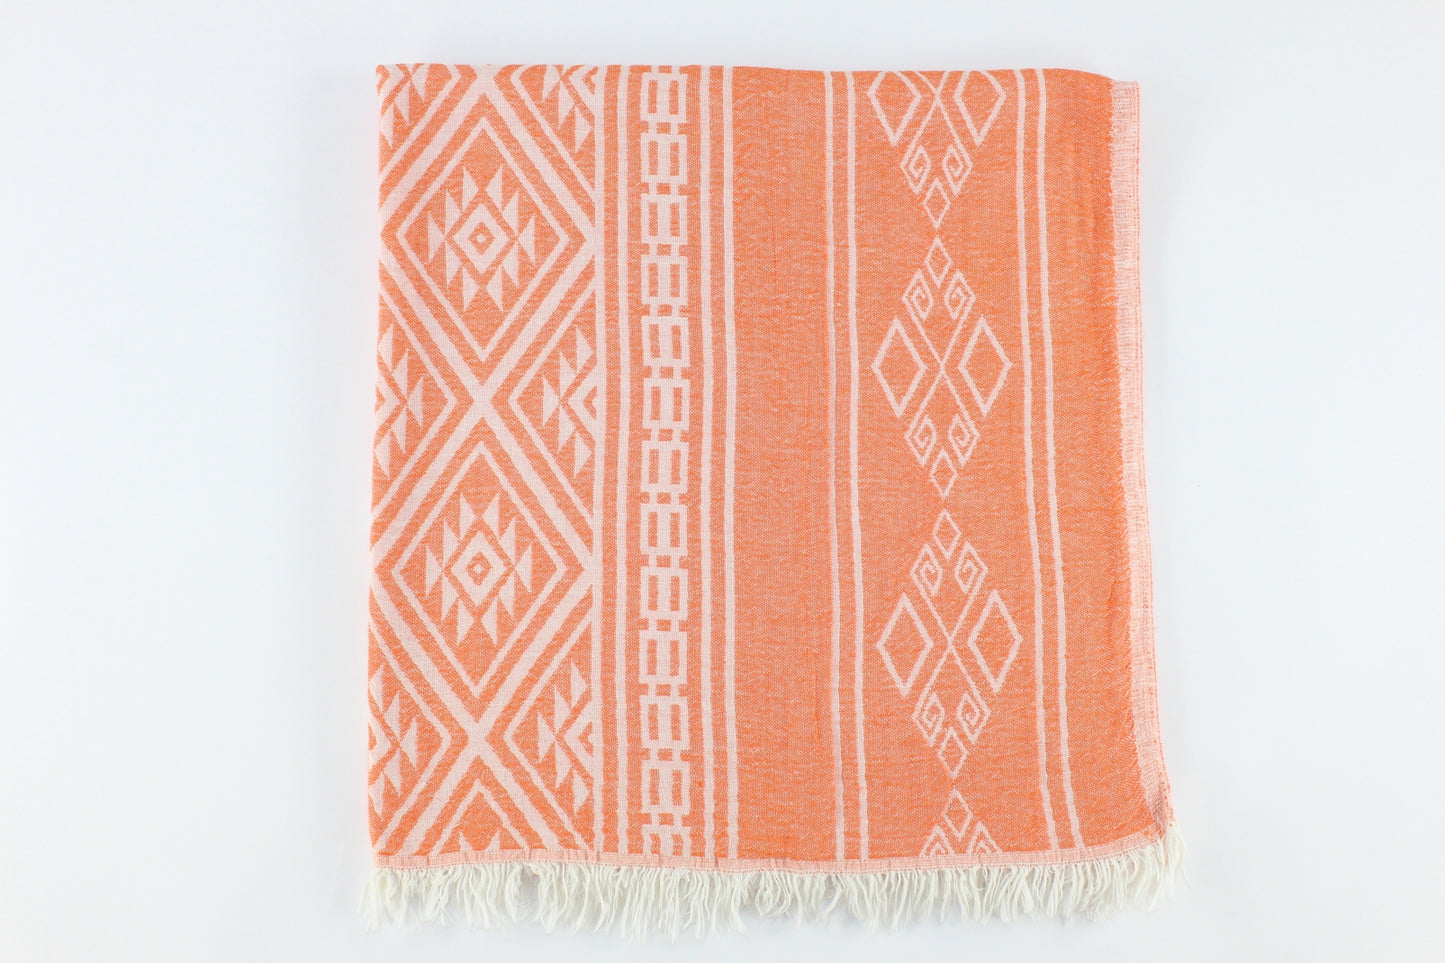 Premium Turkish Double Layer Kilim Towel Peshtemal Fouta (Orange)